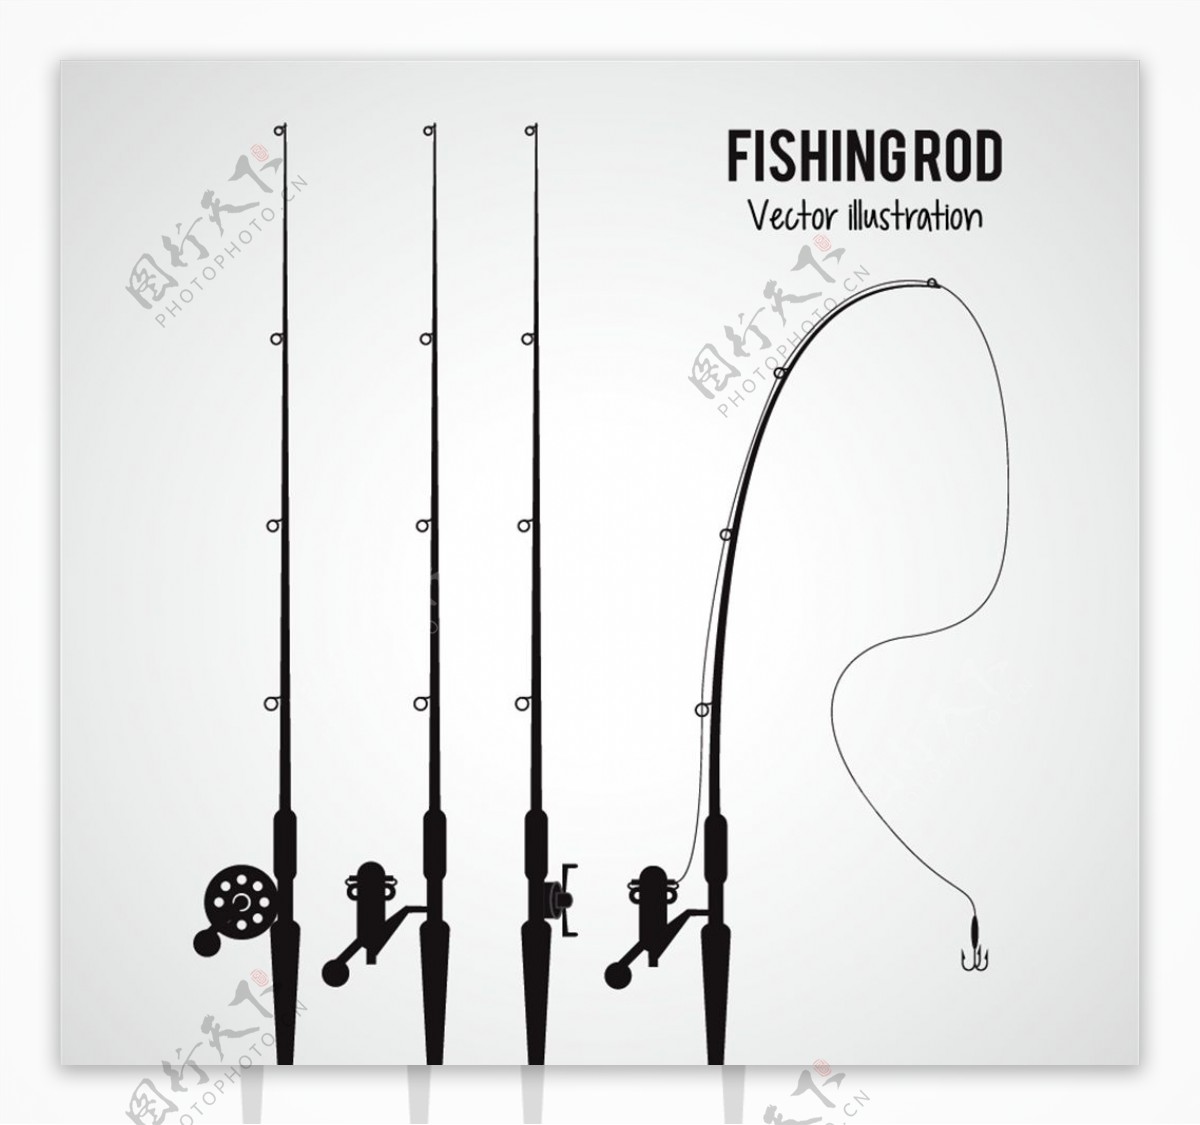 四款不同的钓鱼竿矢量素材